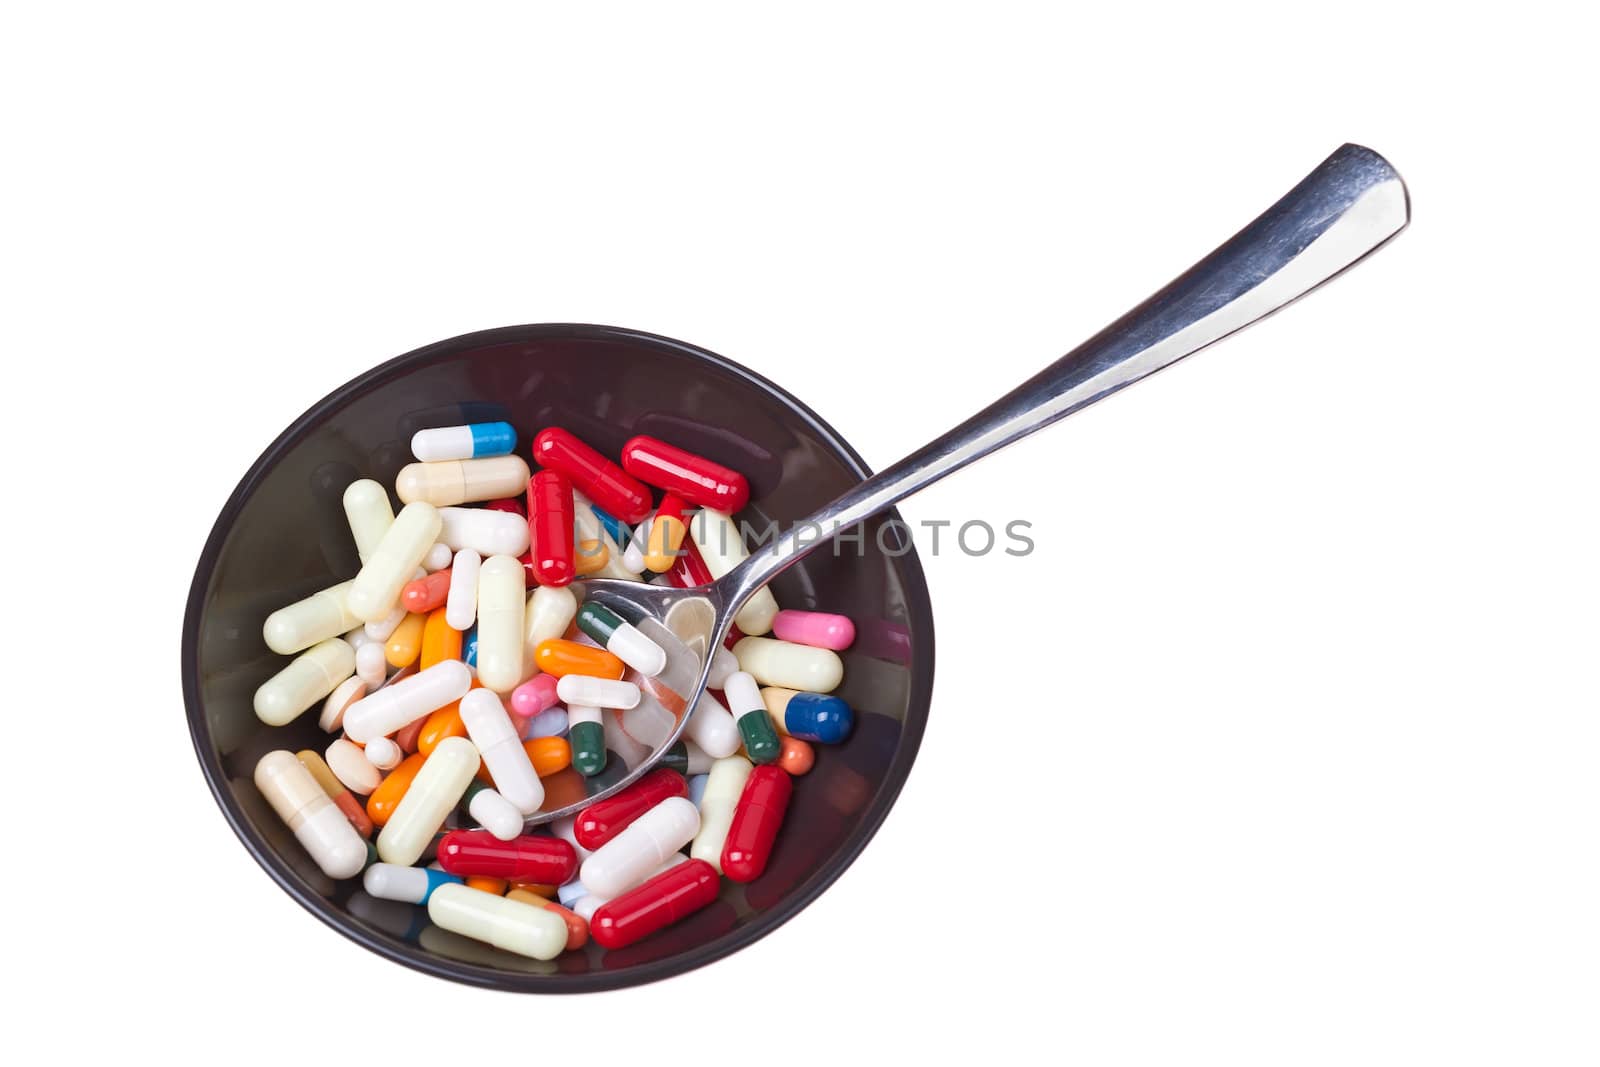 Pills for breakfast by dario_lo_presti